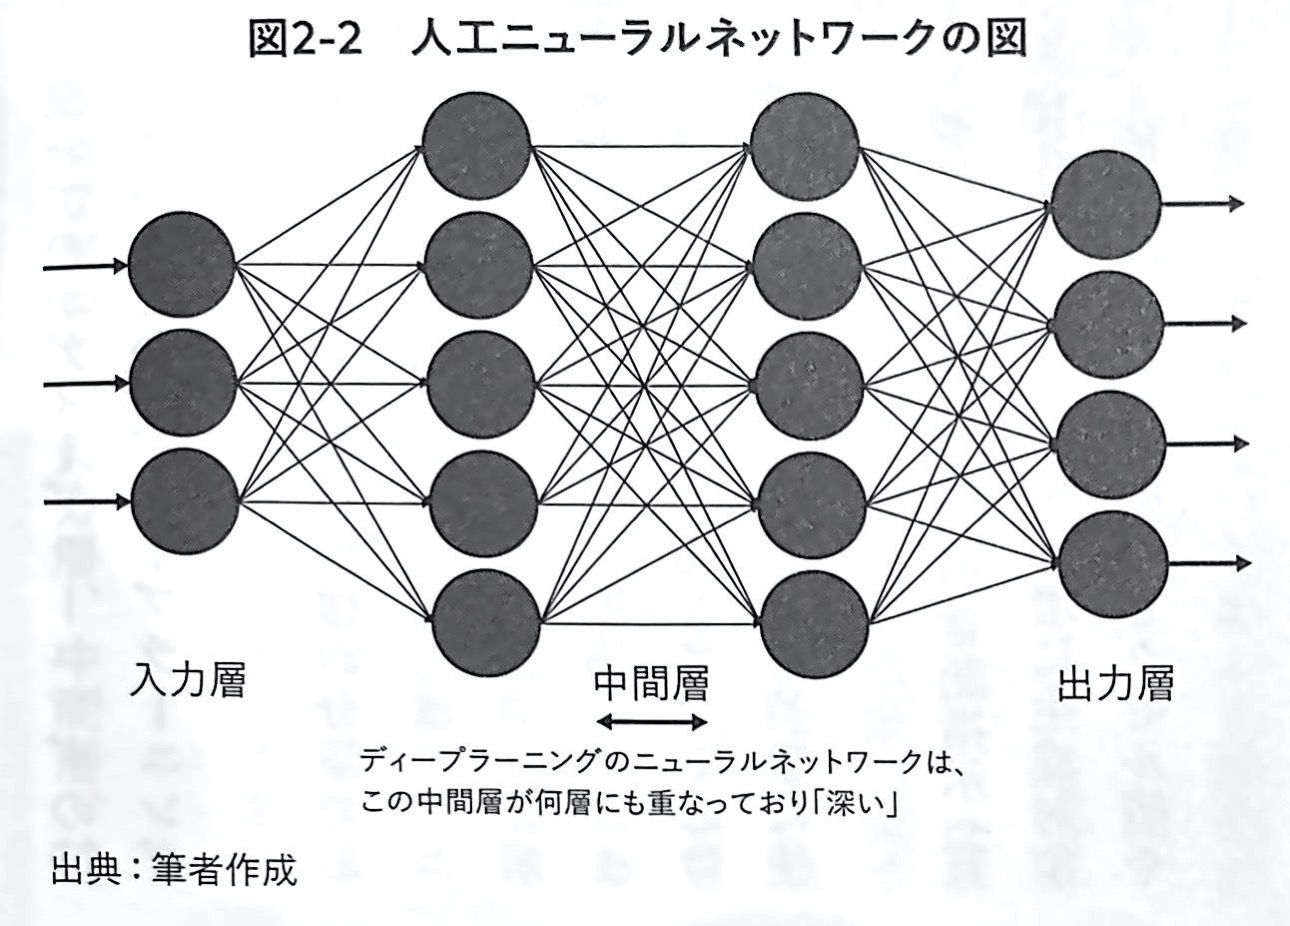 図2−2 人工ニューラルネットワークの図 生成AIで世界はこう変わる 第2章